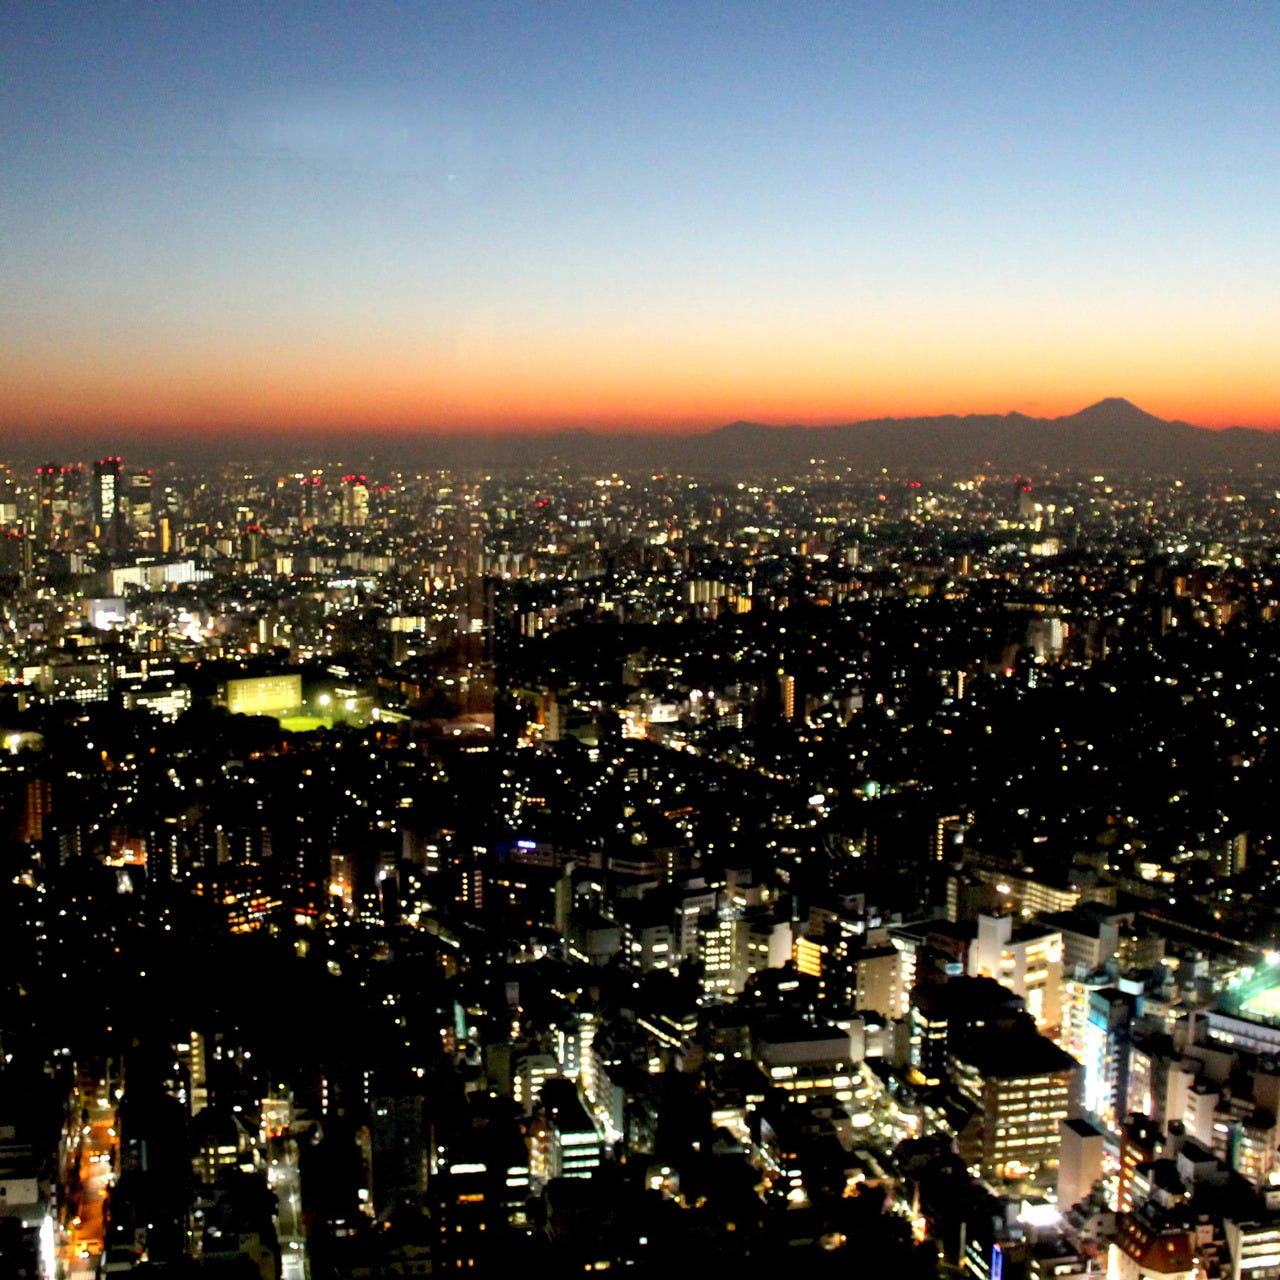 夕暮れの富士山と夜景に変わる新宿の摩天楼をお楽しみください